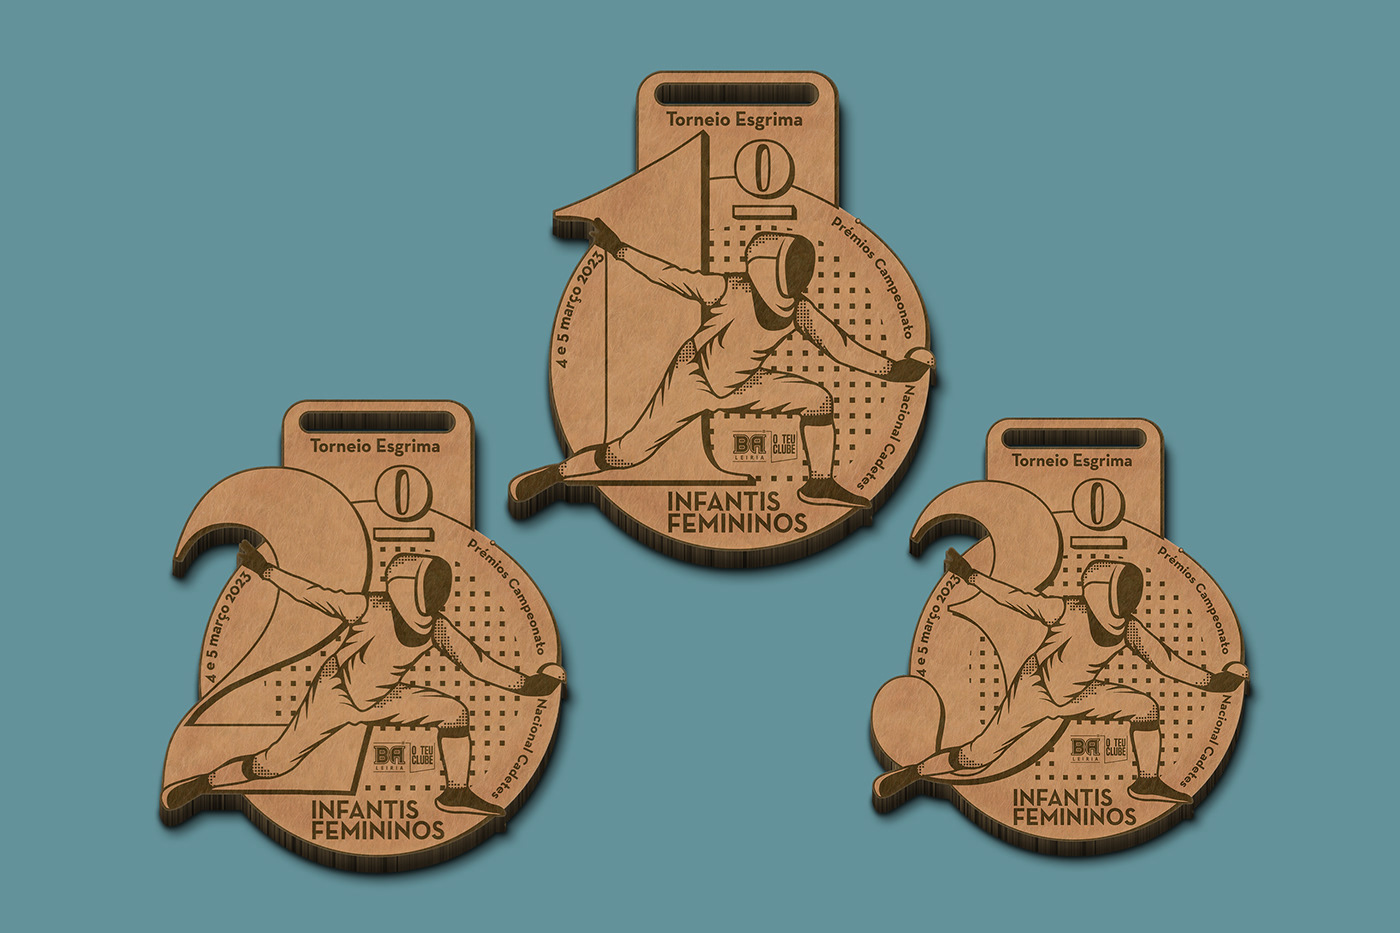 design design gráfico fencing ilustration Medal Design medals sport wood